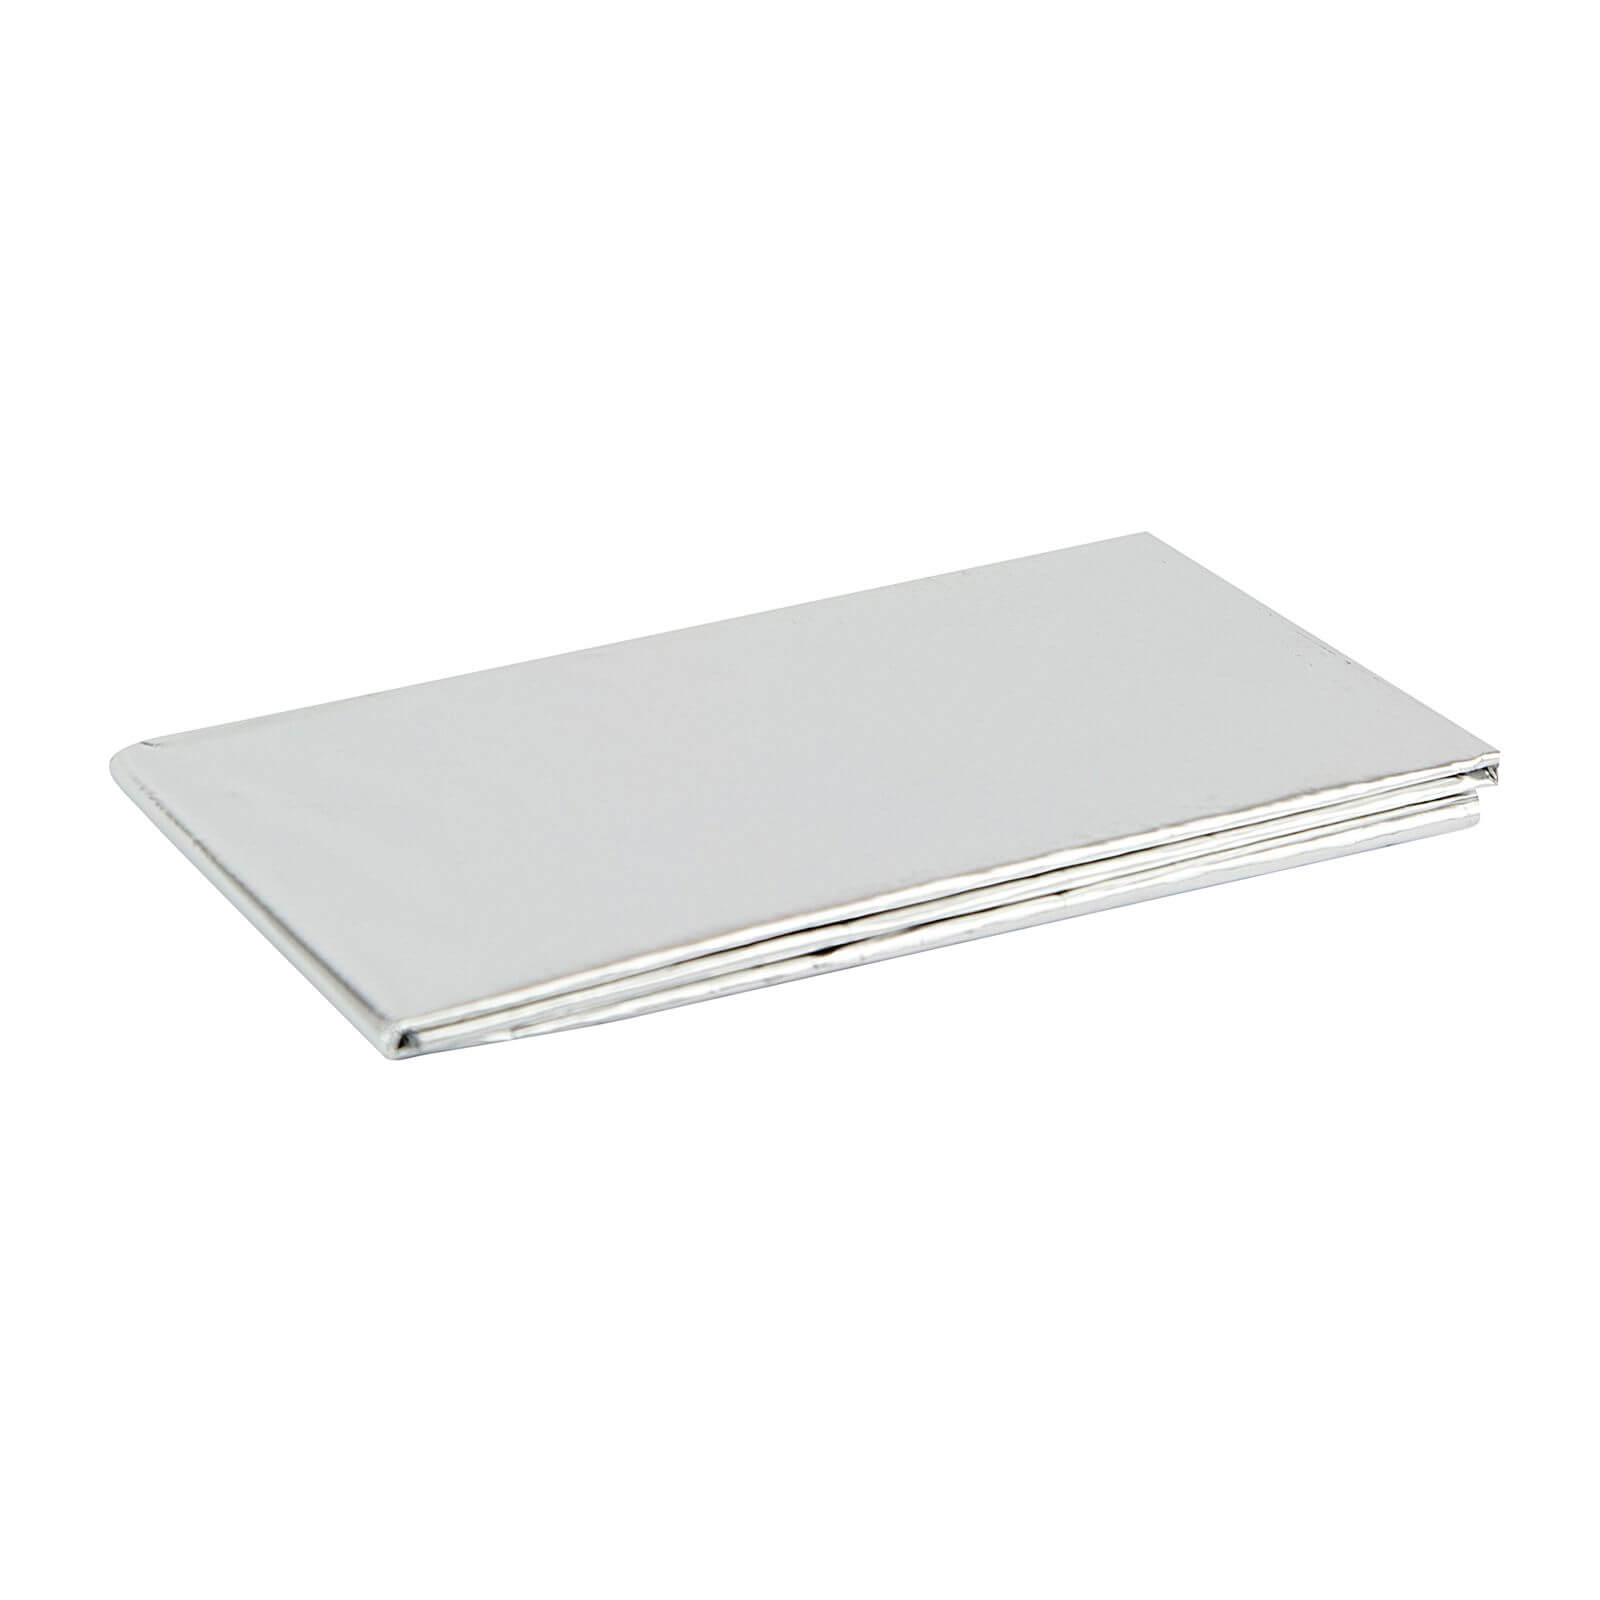 Unika Worktop Heat Reflective Aluminium Sheet